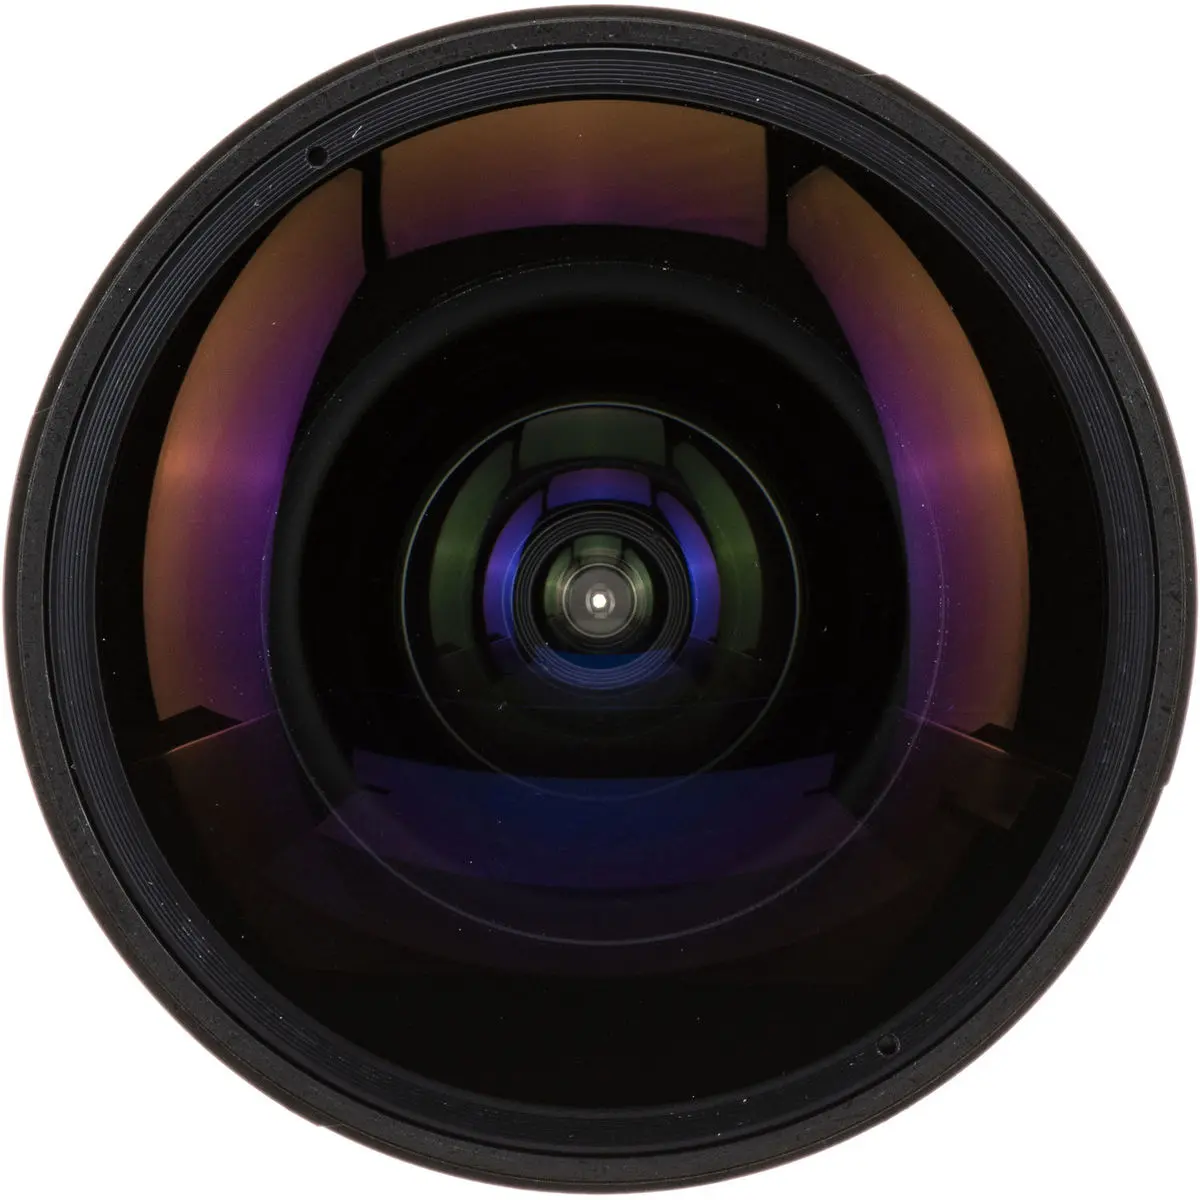 4. Samyang 12mm f/2.8 ED AS NCS Fish-eye Lens for Nikon